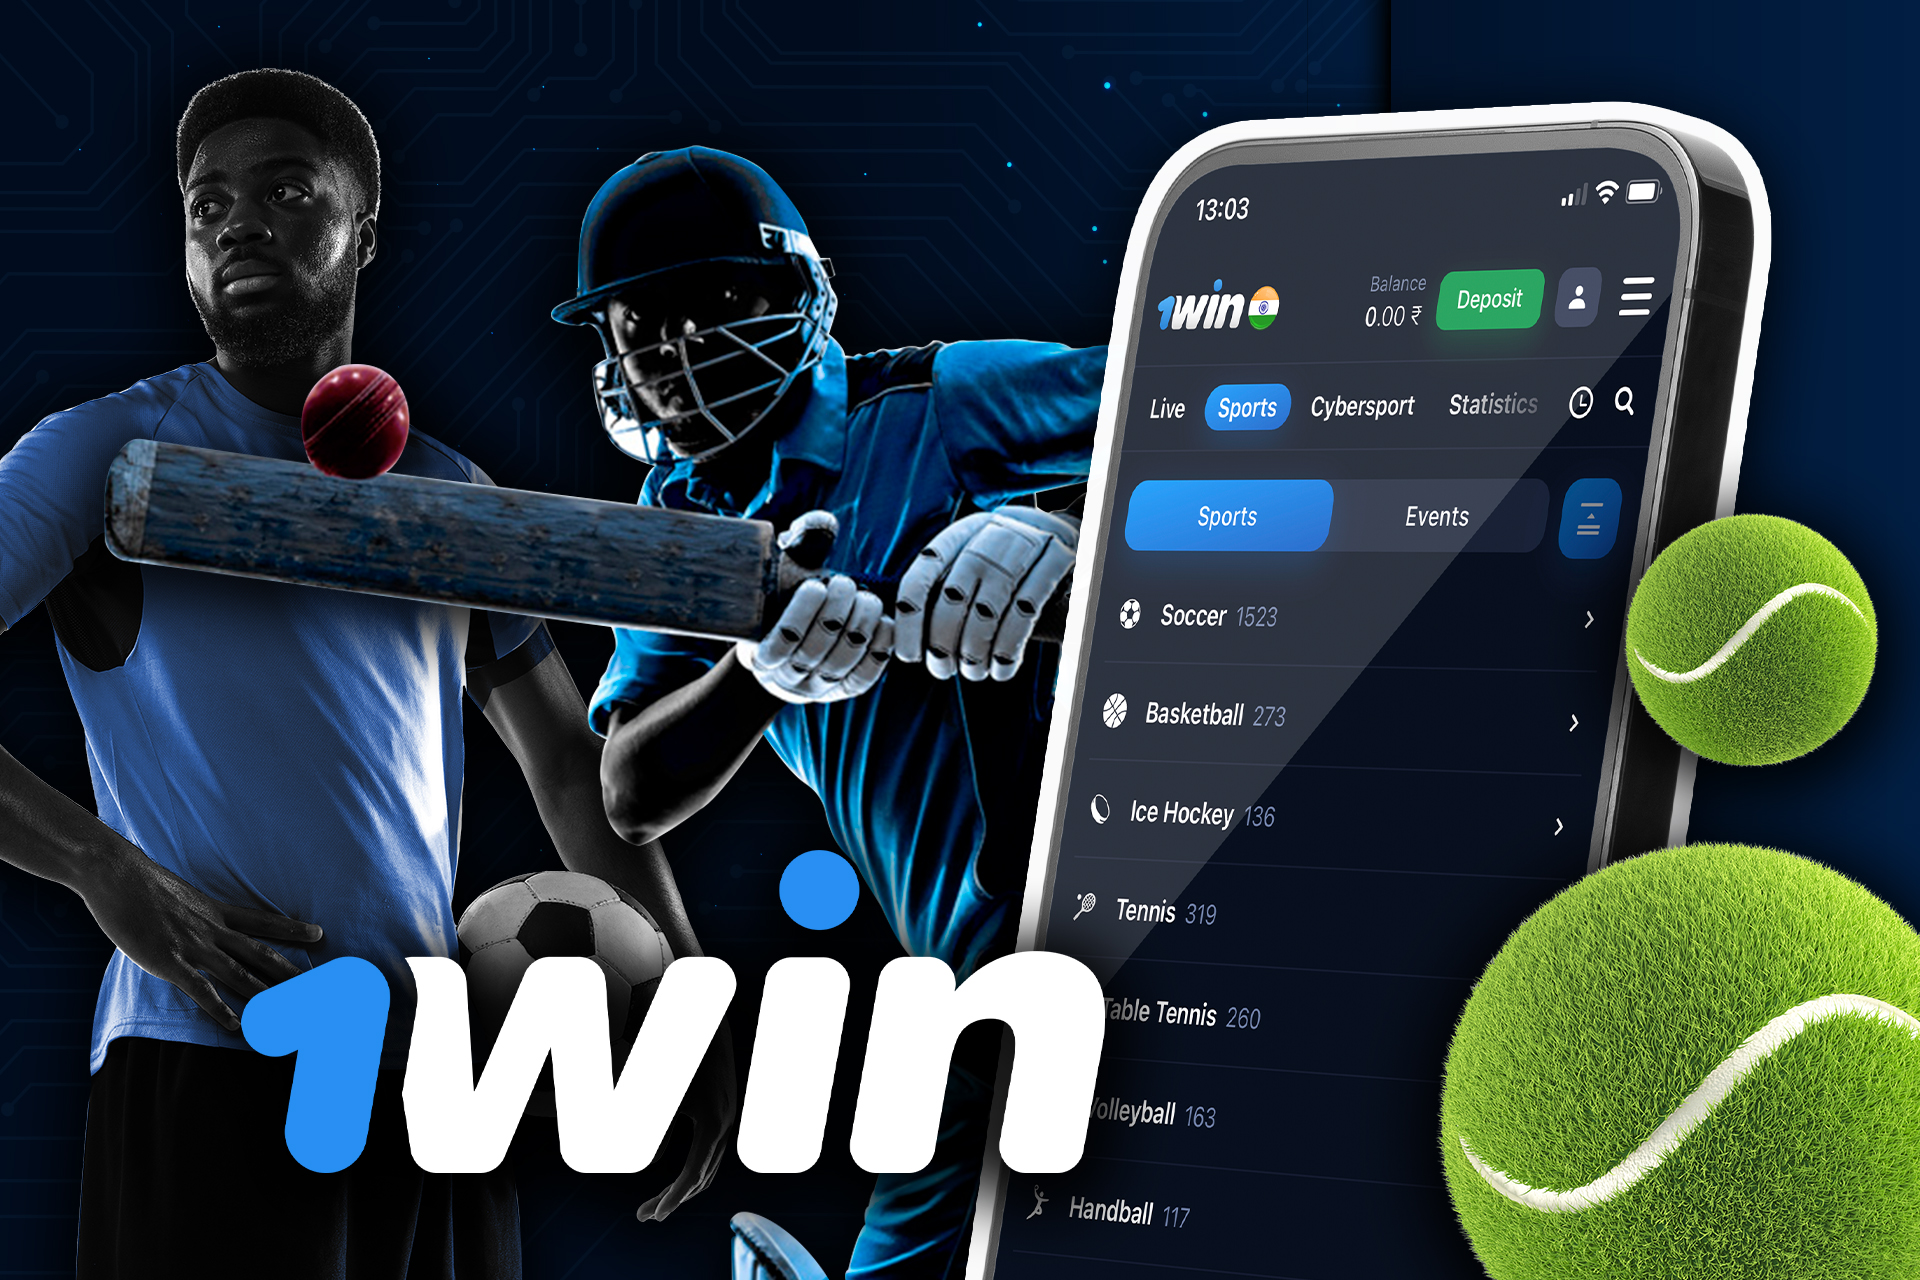 Puede apostar en varios deportes a través de la aplicación 1win en cualquier lugar.